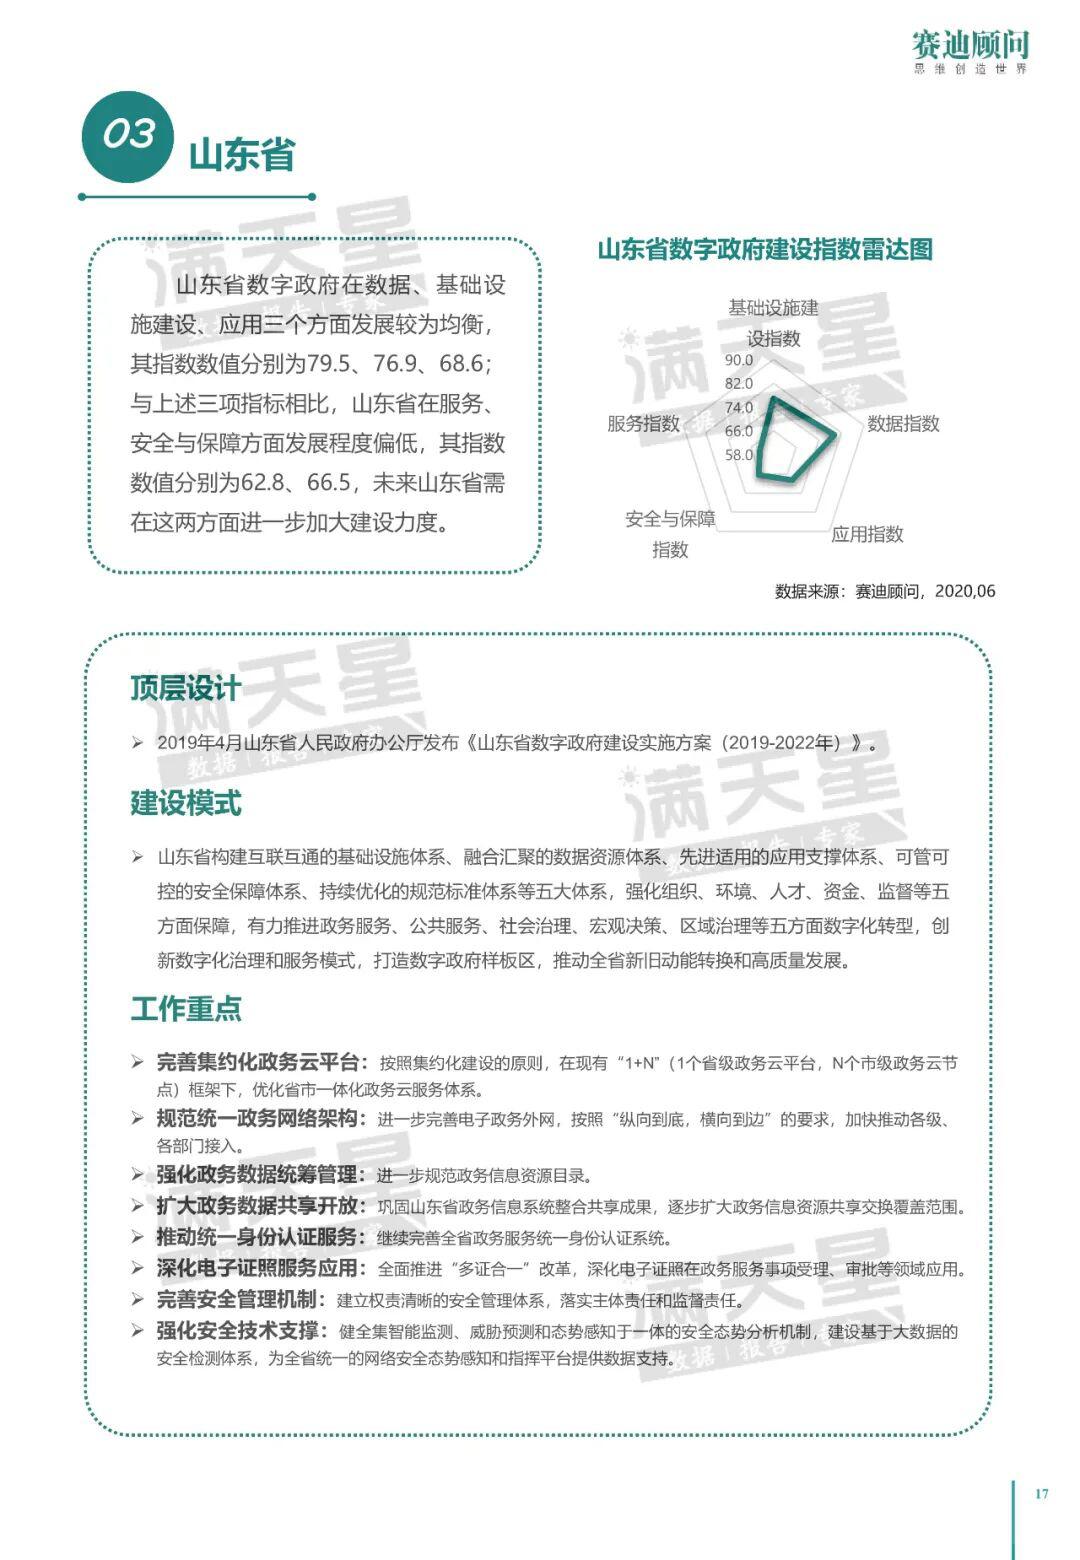 中国电子信息产业发展研究院：2020中国数字政府建设白皮书